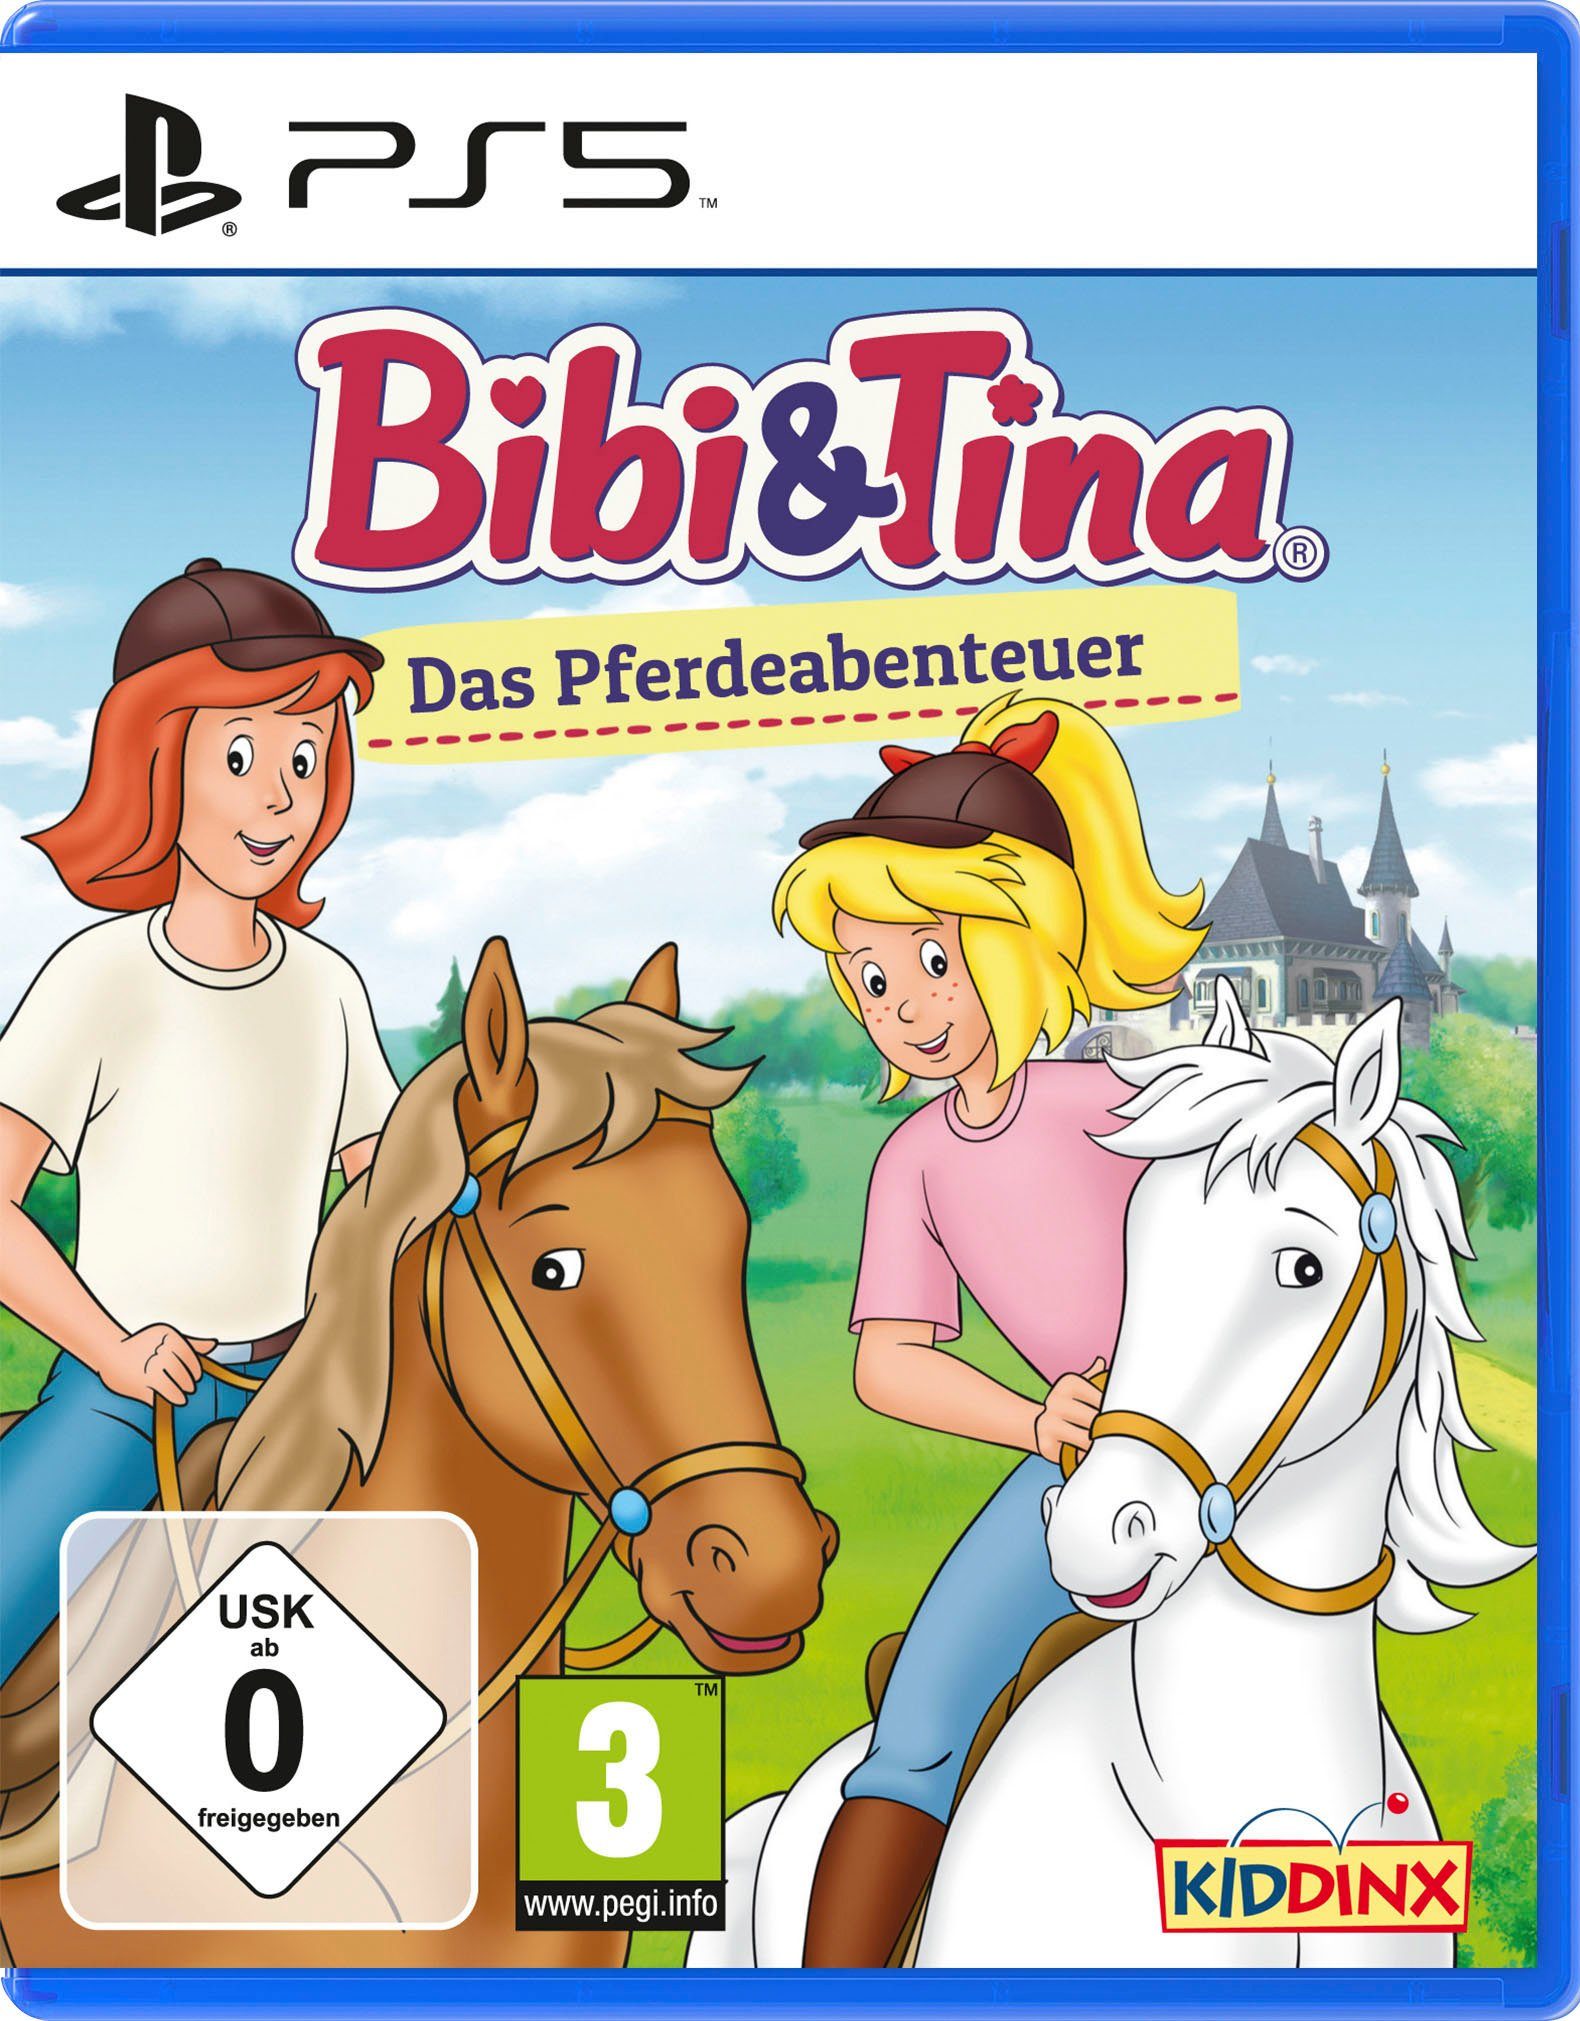 Bibi PlayStation Pferdeabenteuer Das & Tina: 5